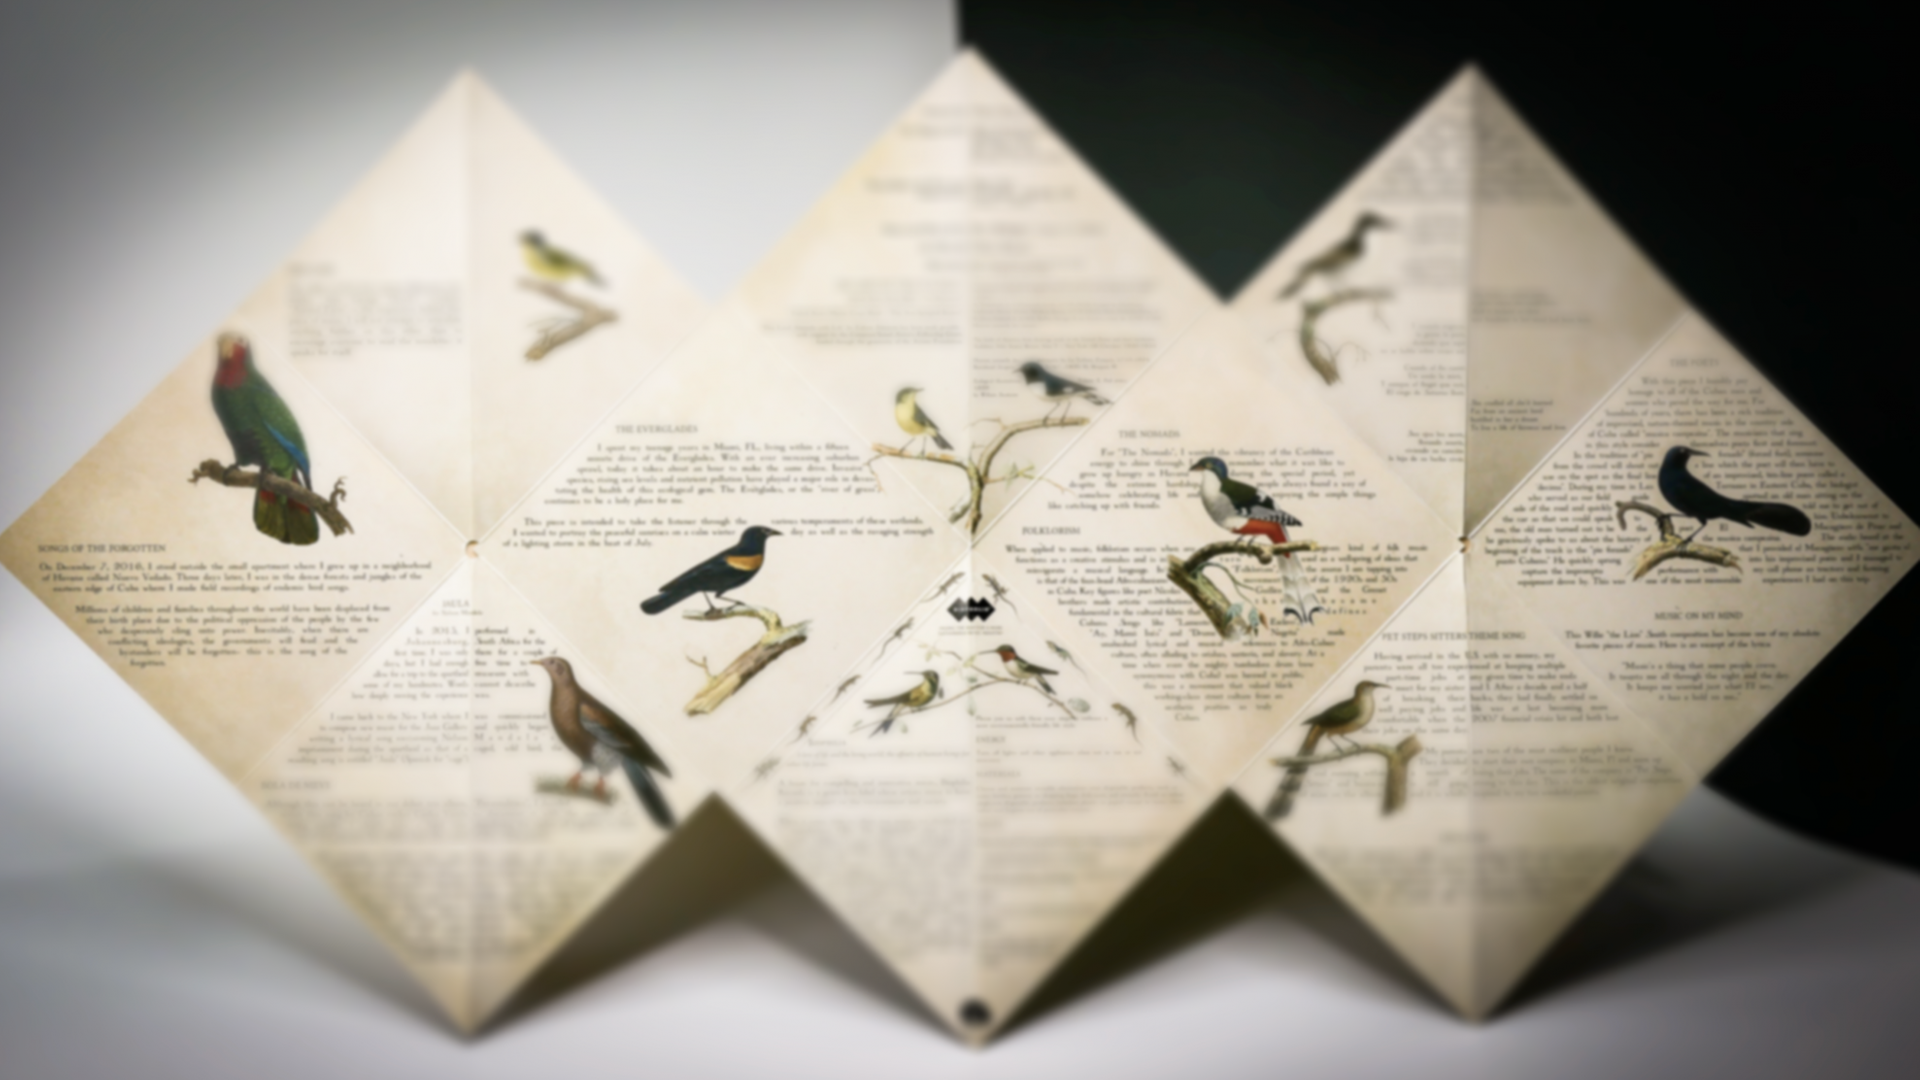 Fabian Almazans neueste Veröffentlichung: Auseinandergefaltetes Papier, bedruckt mit Zeichnungen von Vögeln und Songtexten